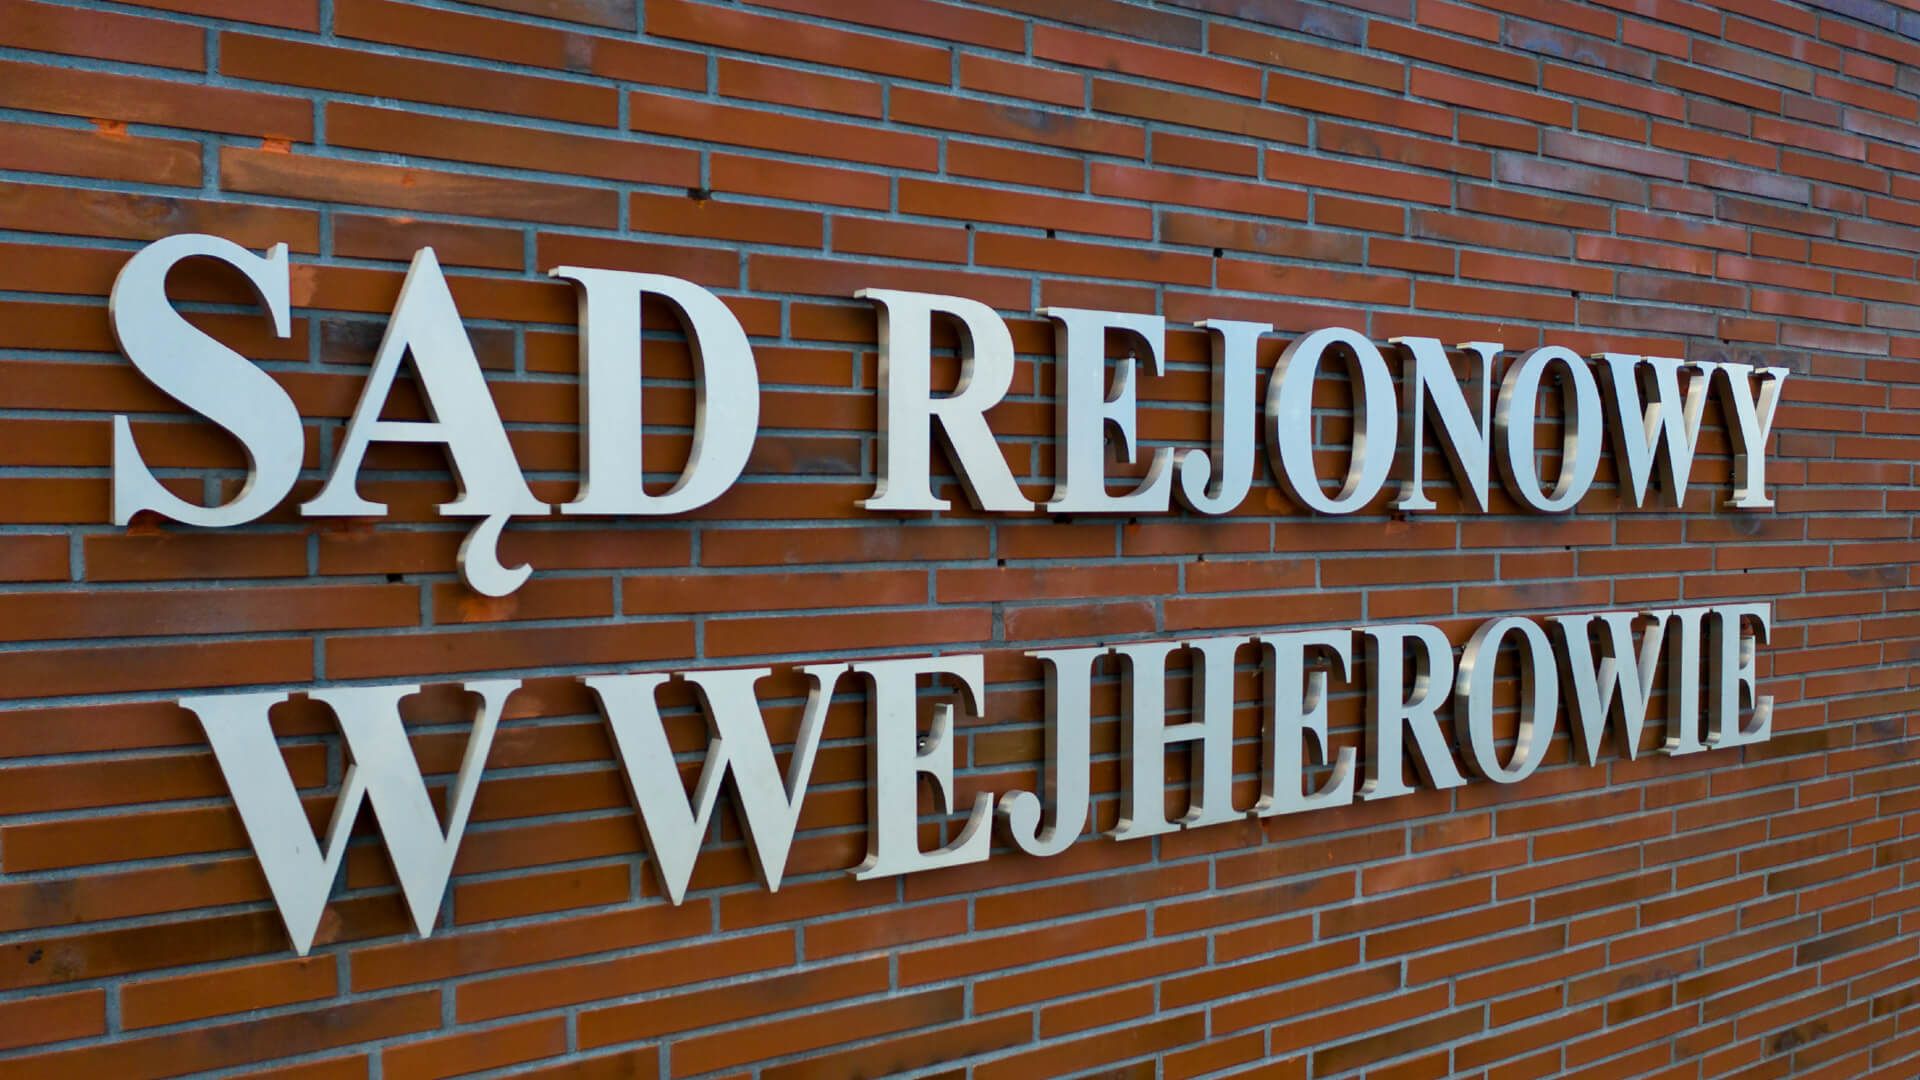 Rechtbank Wejherowo - sa-rejonowy-letters-ruimtelijke-letters-met-metalen-letters-op-de-muur-van-het-gebouw-letters-op-de-muur-met-cegel-letters-op-hoogte-letters-direct-aan-de-muur-brieven-op-cegel-ruimtelijke-wejherowo